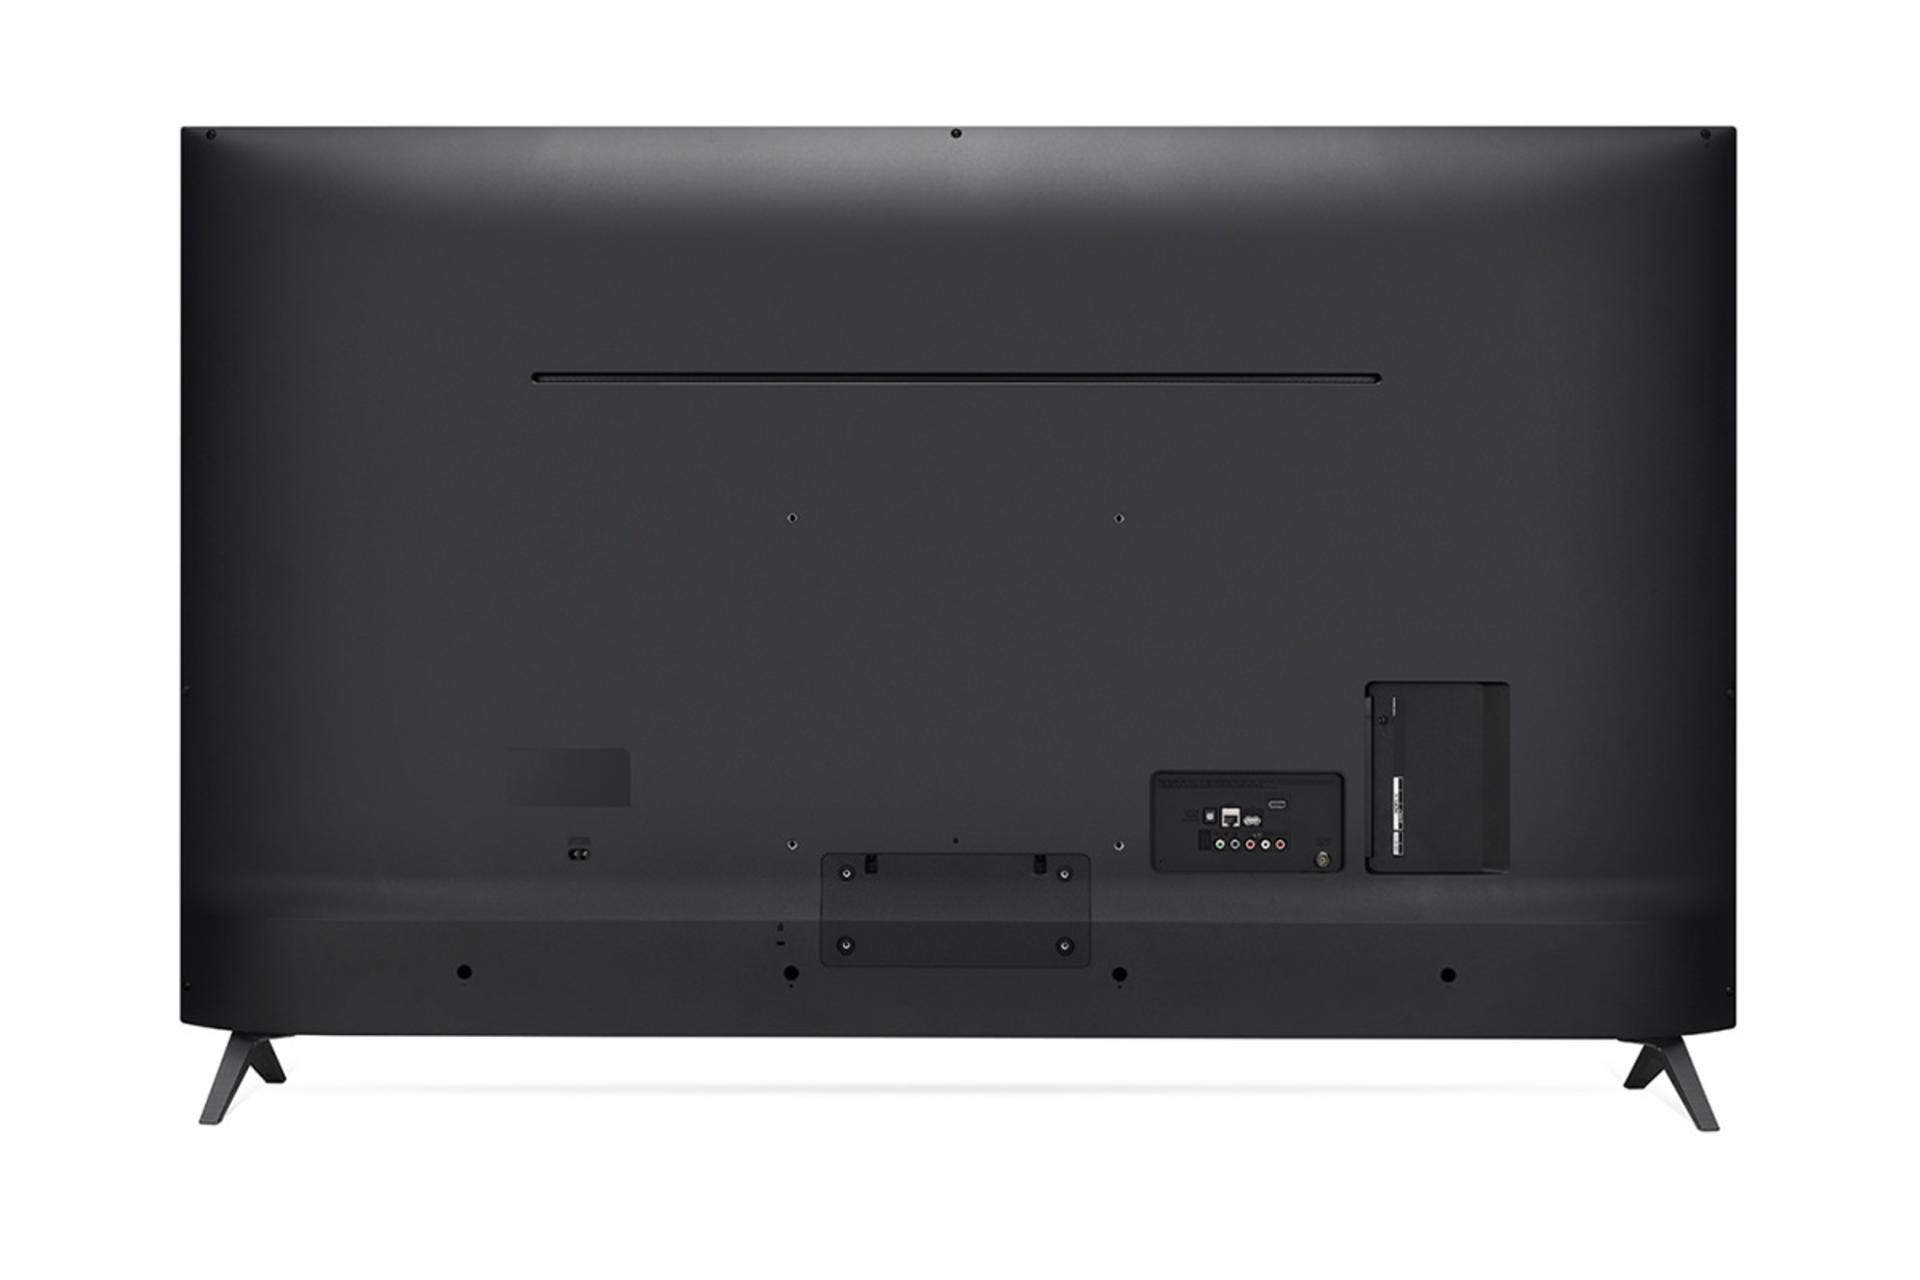 نمای پشت تلویزیون ال جی UK6300 مدل 55 اینچ و نمایش محل پورت های پشتی و کنار 